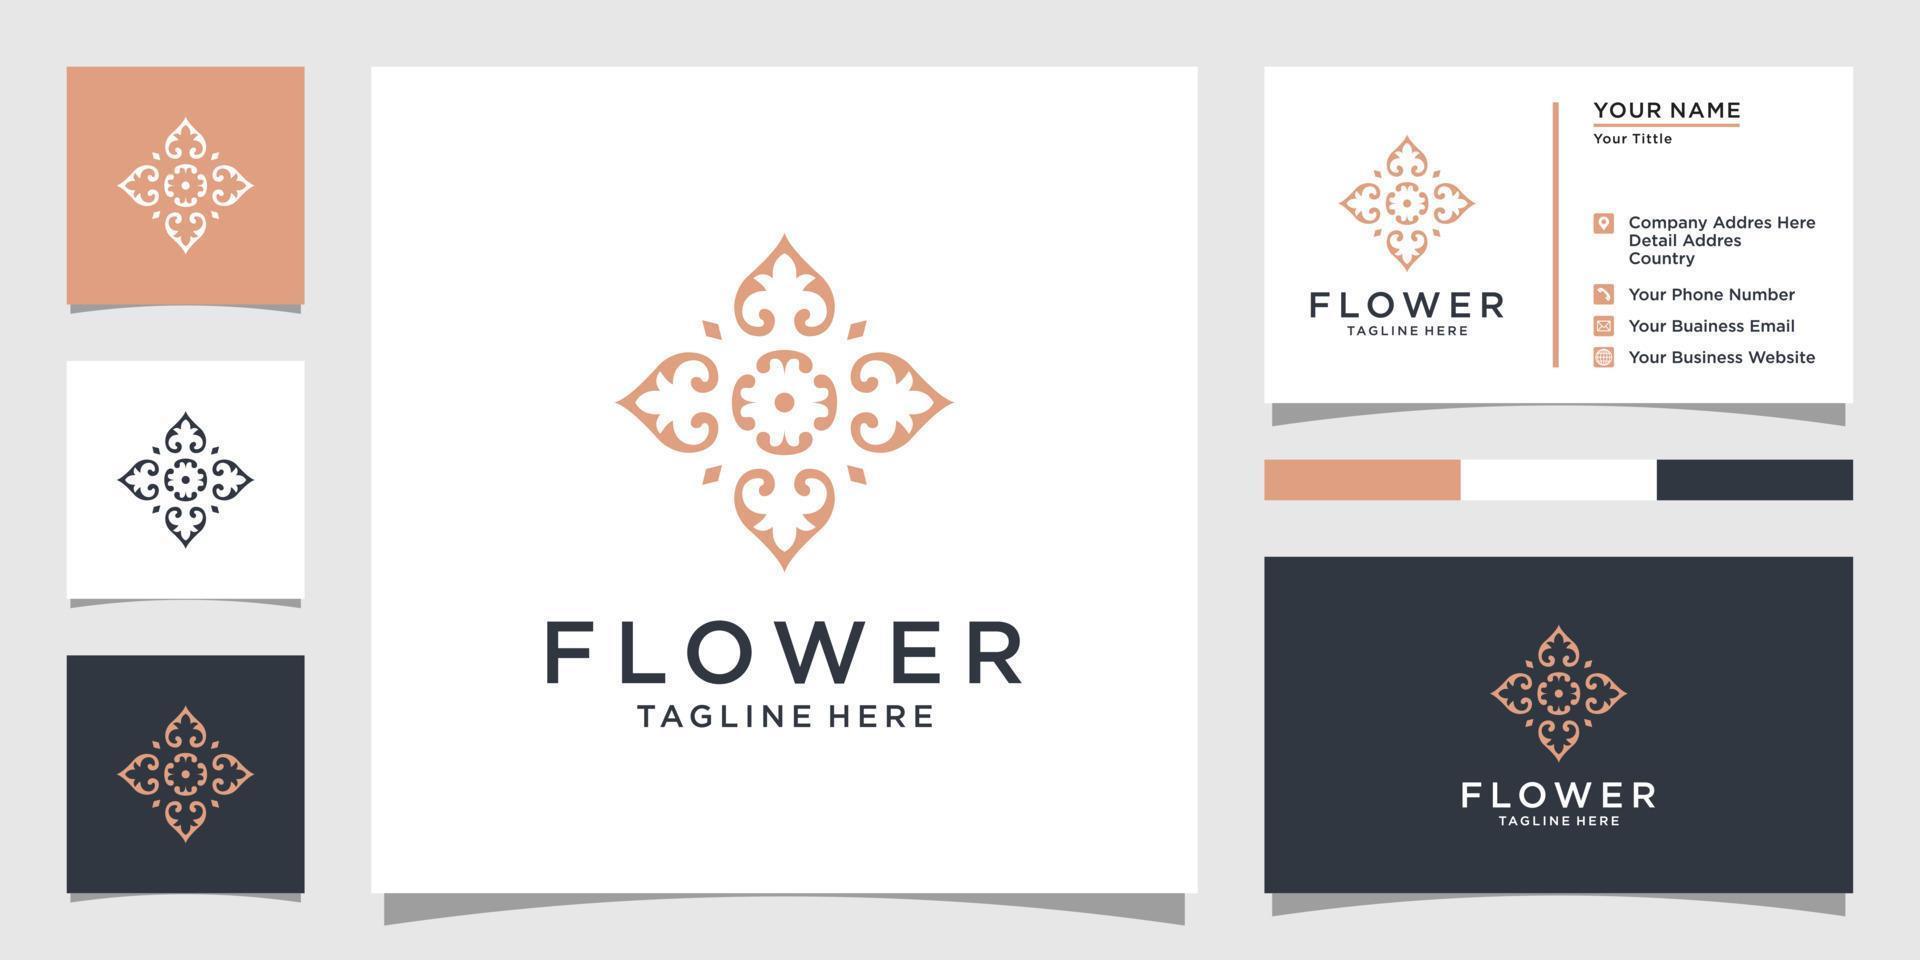 blomma logotyp vektor formgivningsmall med visitkort design.